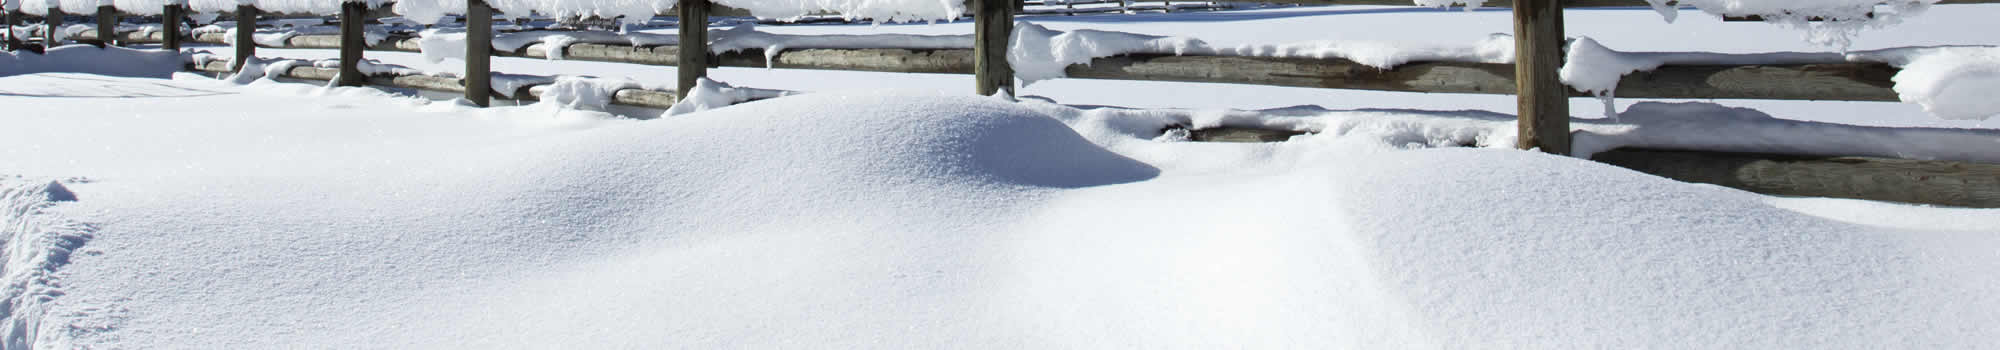 Snow Removal in Sheboygan, WI